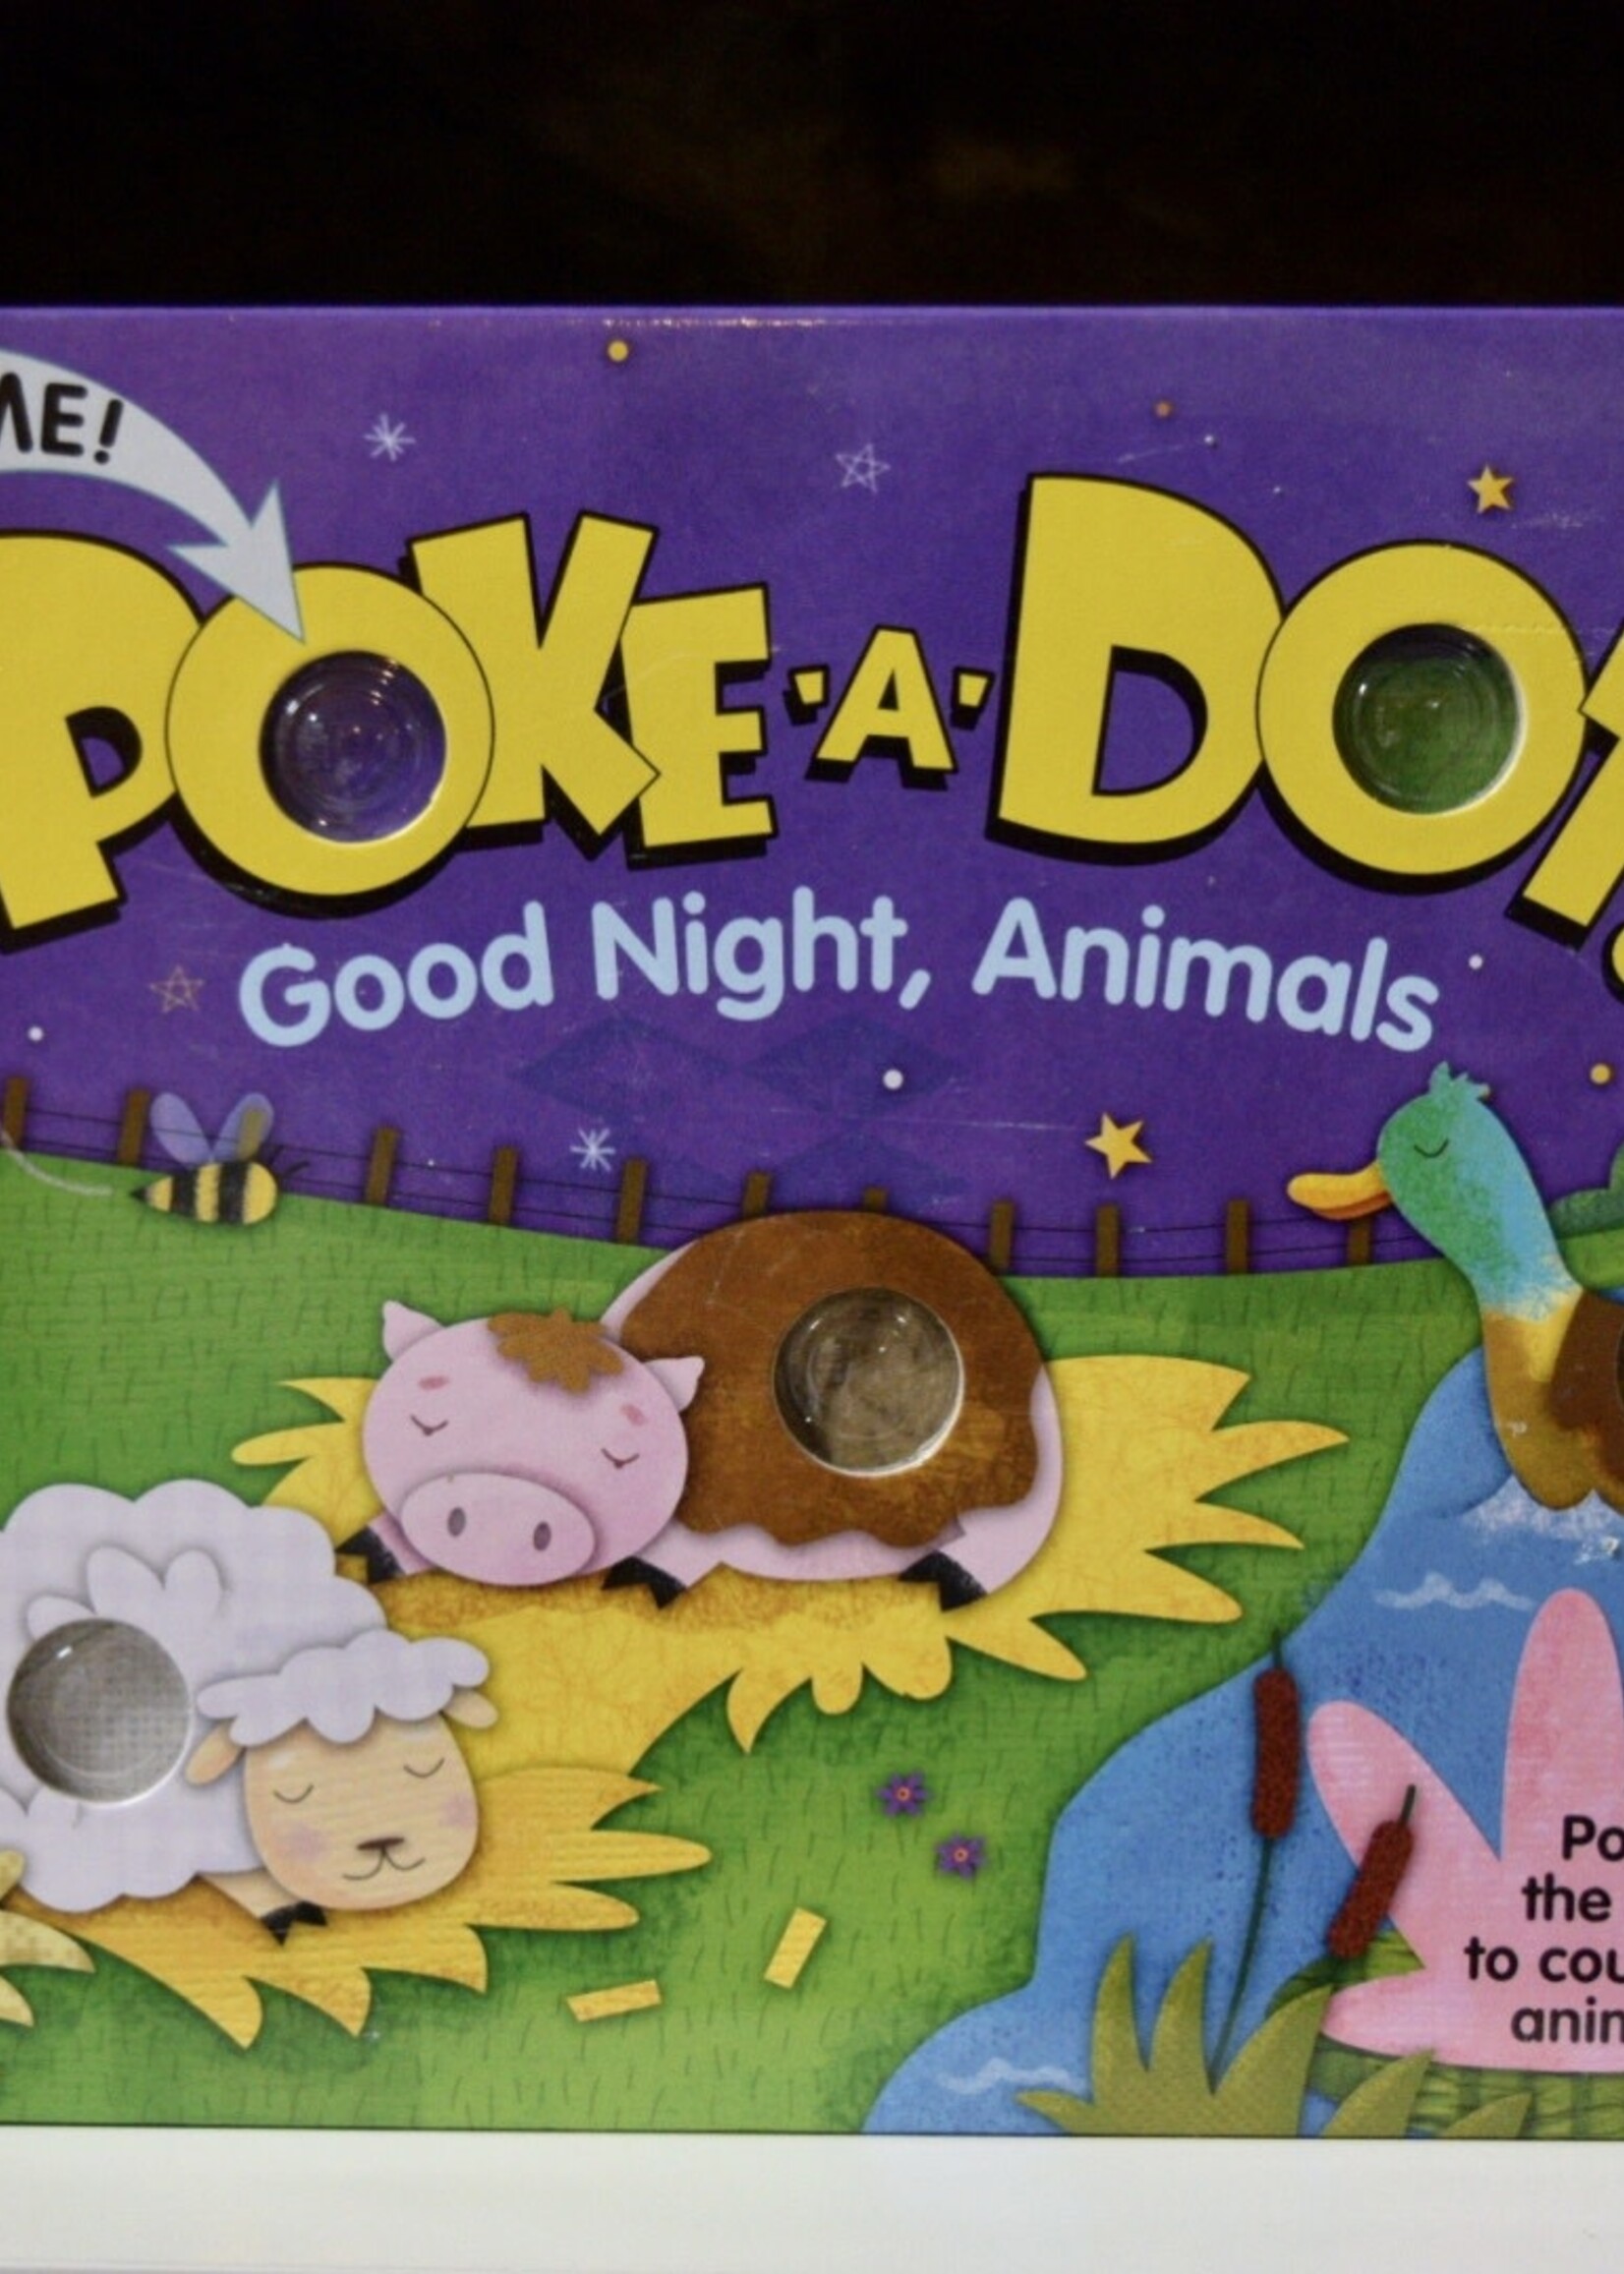 https://cdn.shoplightspeed.com/shops/611354/files/43247809/1652x2313x1/melissa-doug-book-poke-a-dot-good-night-animals.jpg